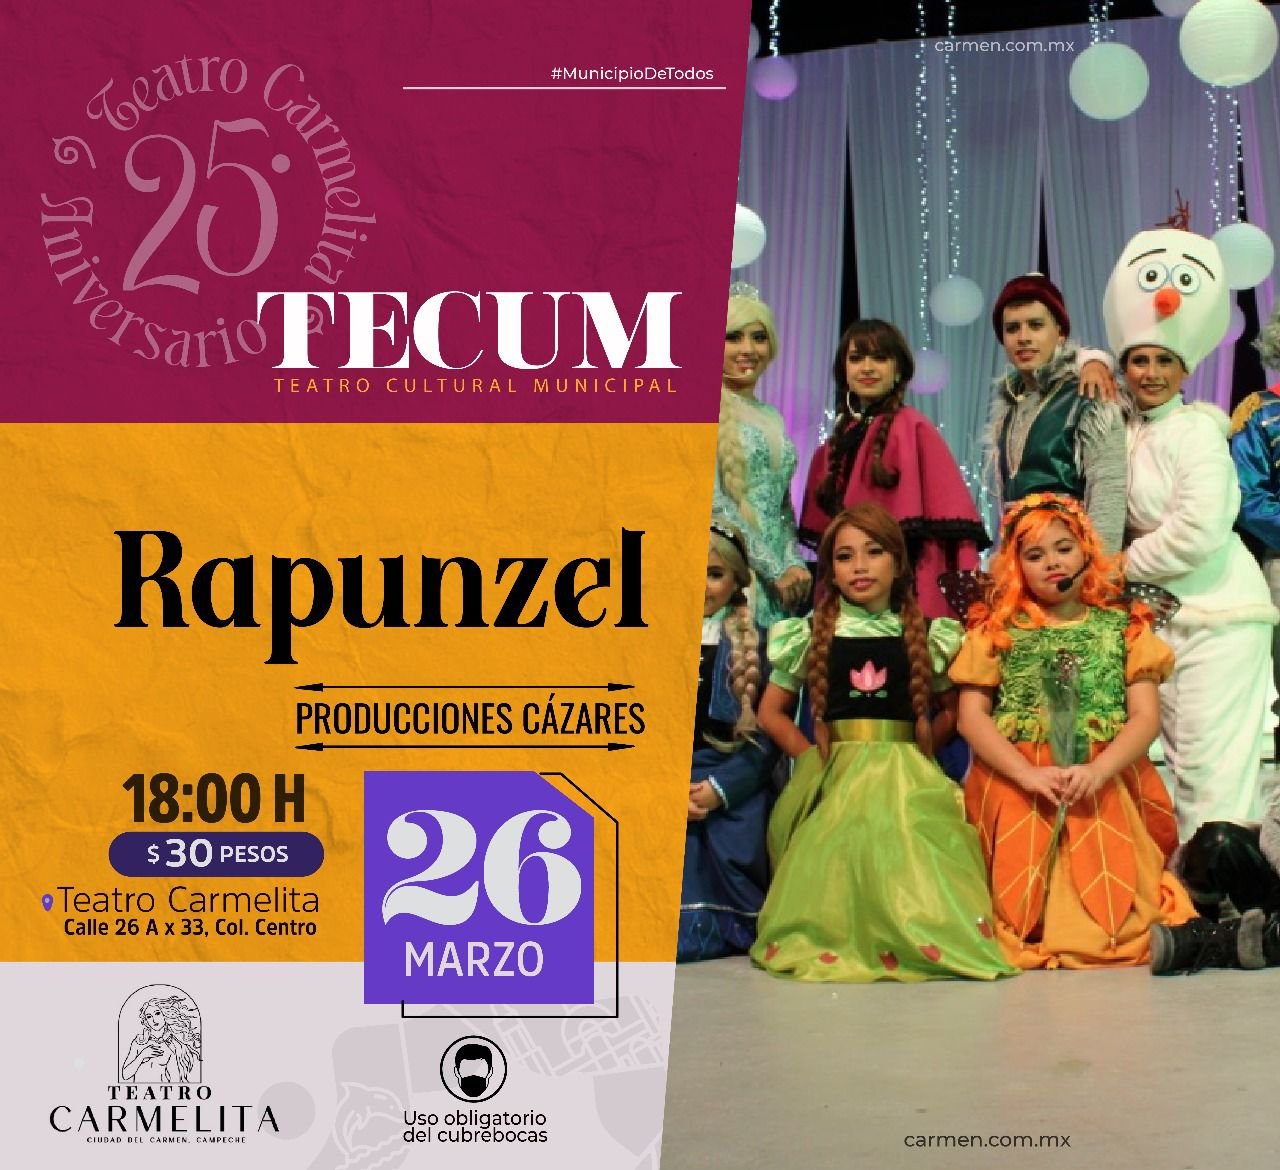 - Celebran con Festival el 25 aniversario del Teatro Carmelita - h-ayuntamiento-del-carmen